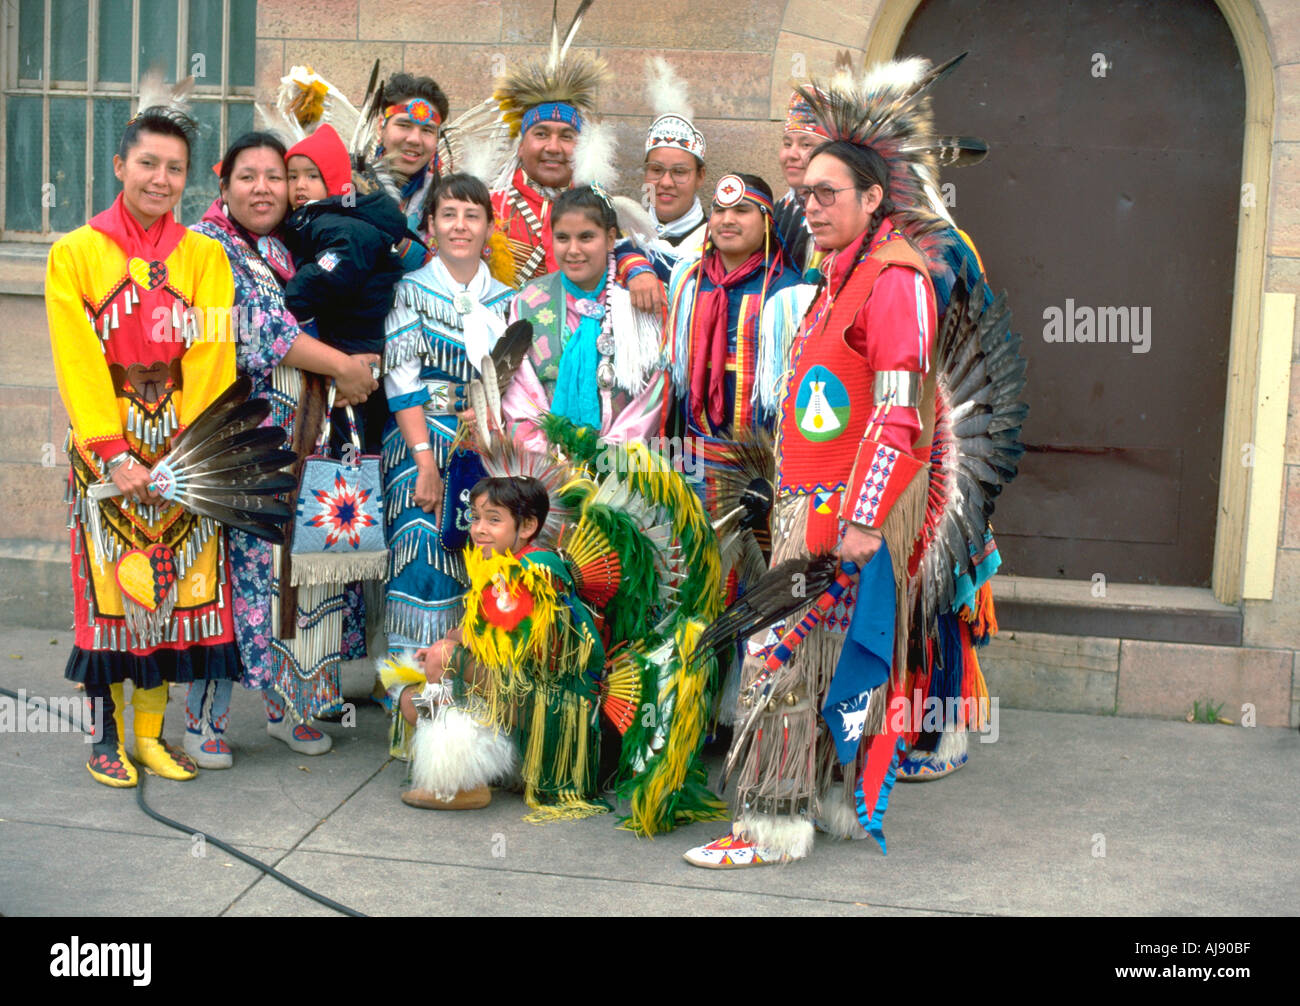 Groupe d'Autochtones américains dans leur costume après un Pow-wow de la danse. Harriet Island St Paul Minnesota USA Banque D'Images